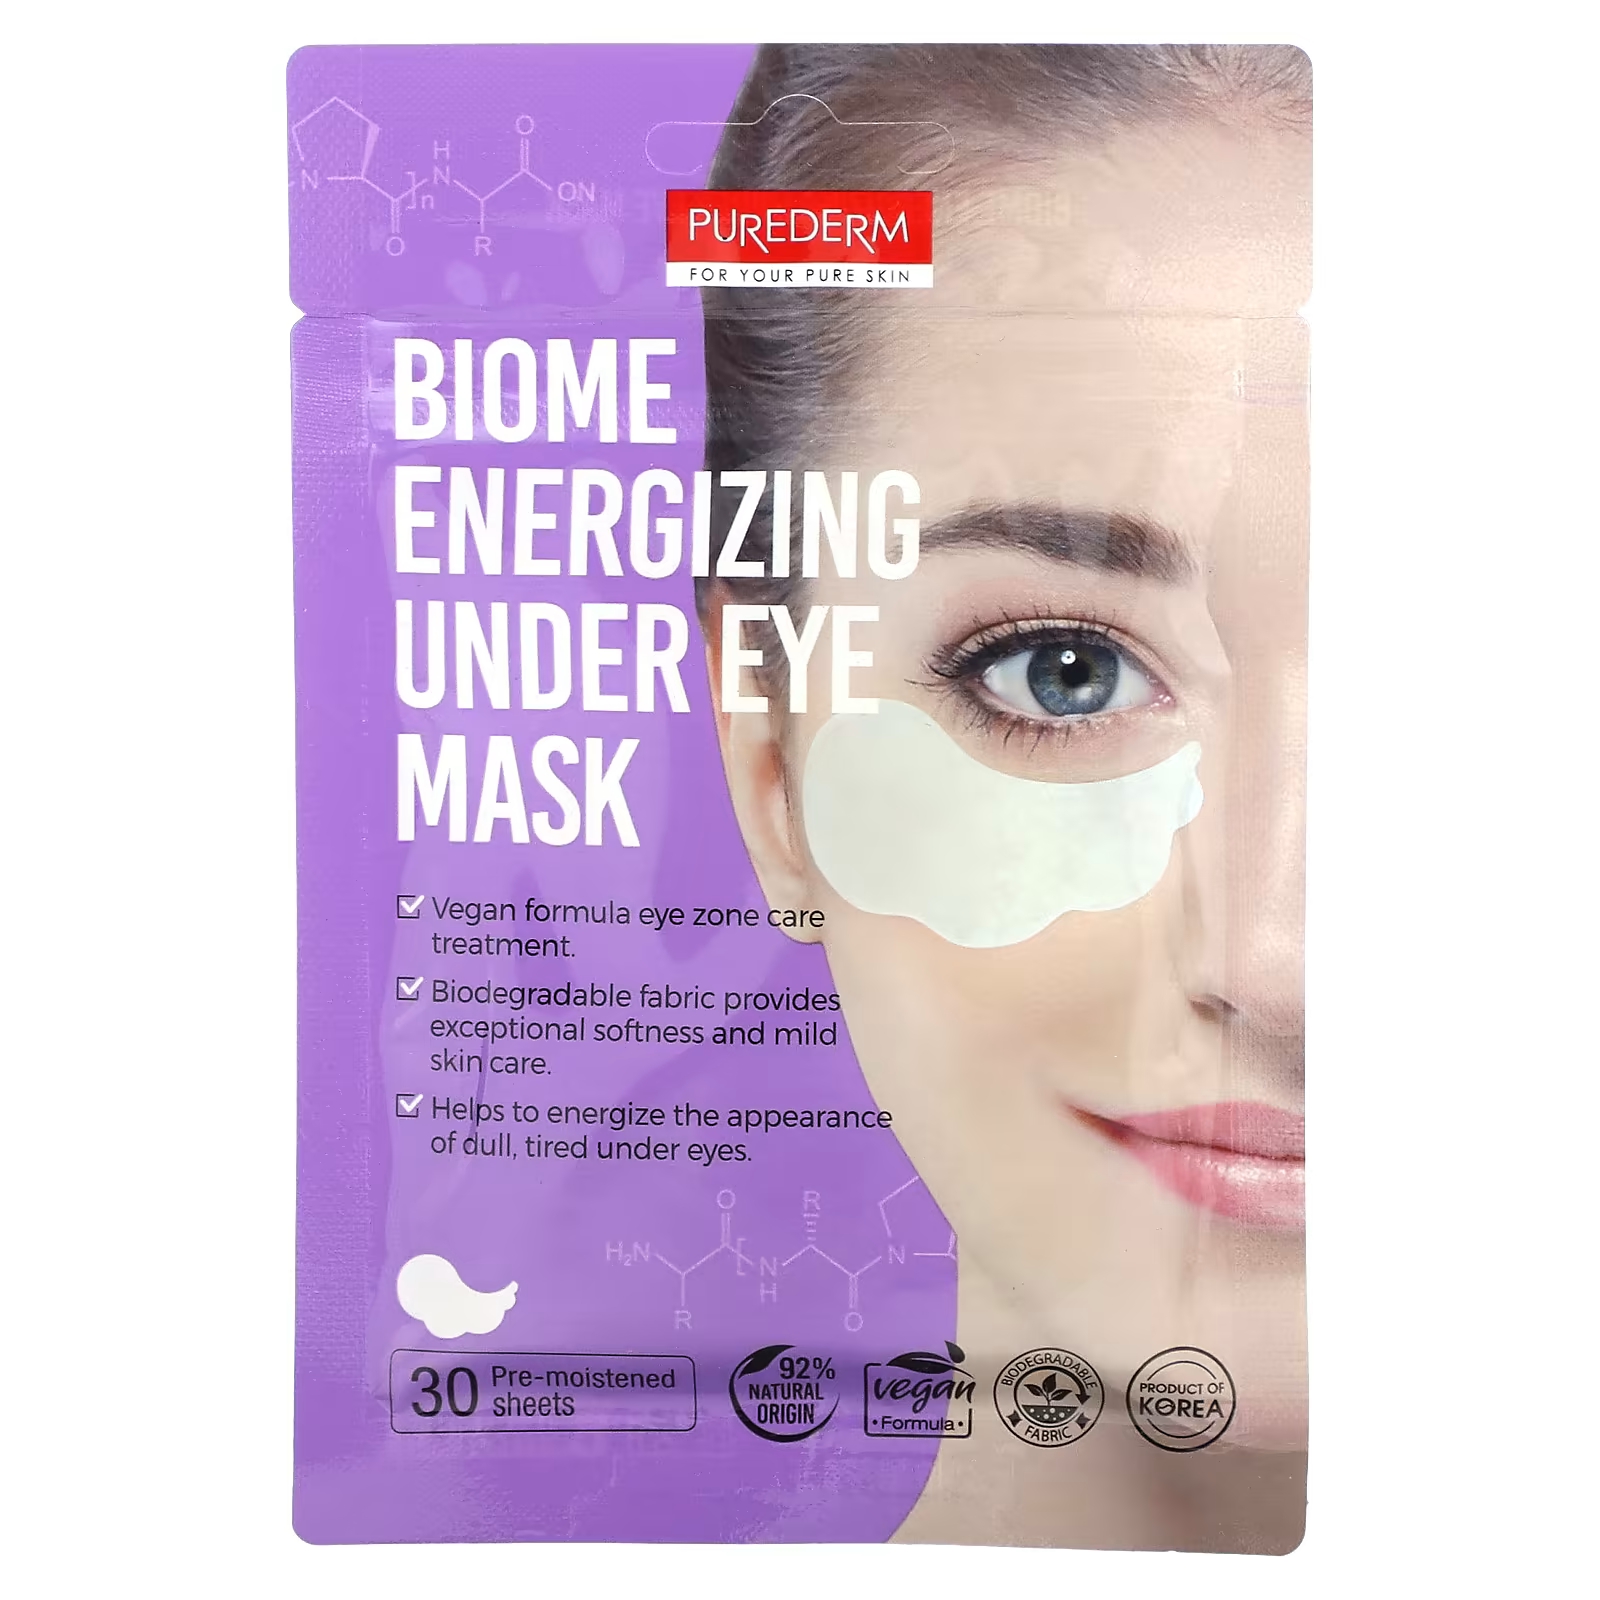 Purederm Biome Energizing Beauty Mask под глазами, 30 предварительно увлажненных листов